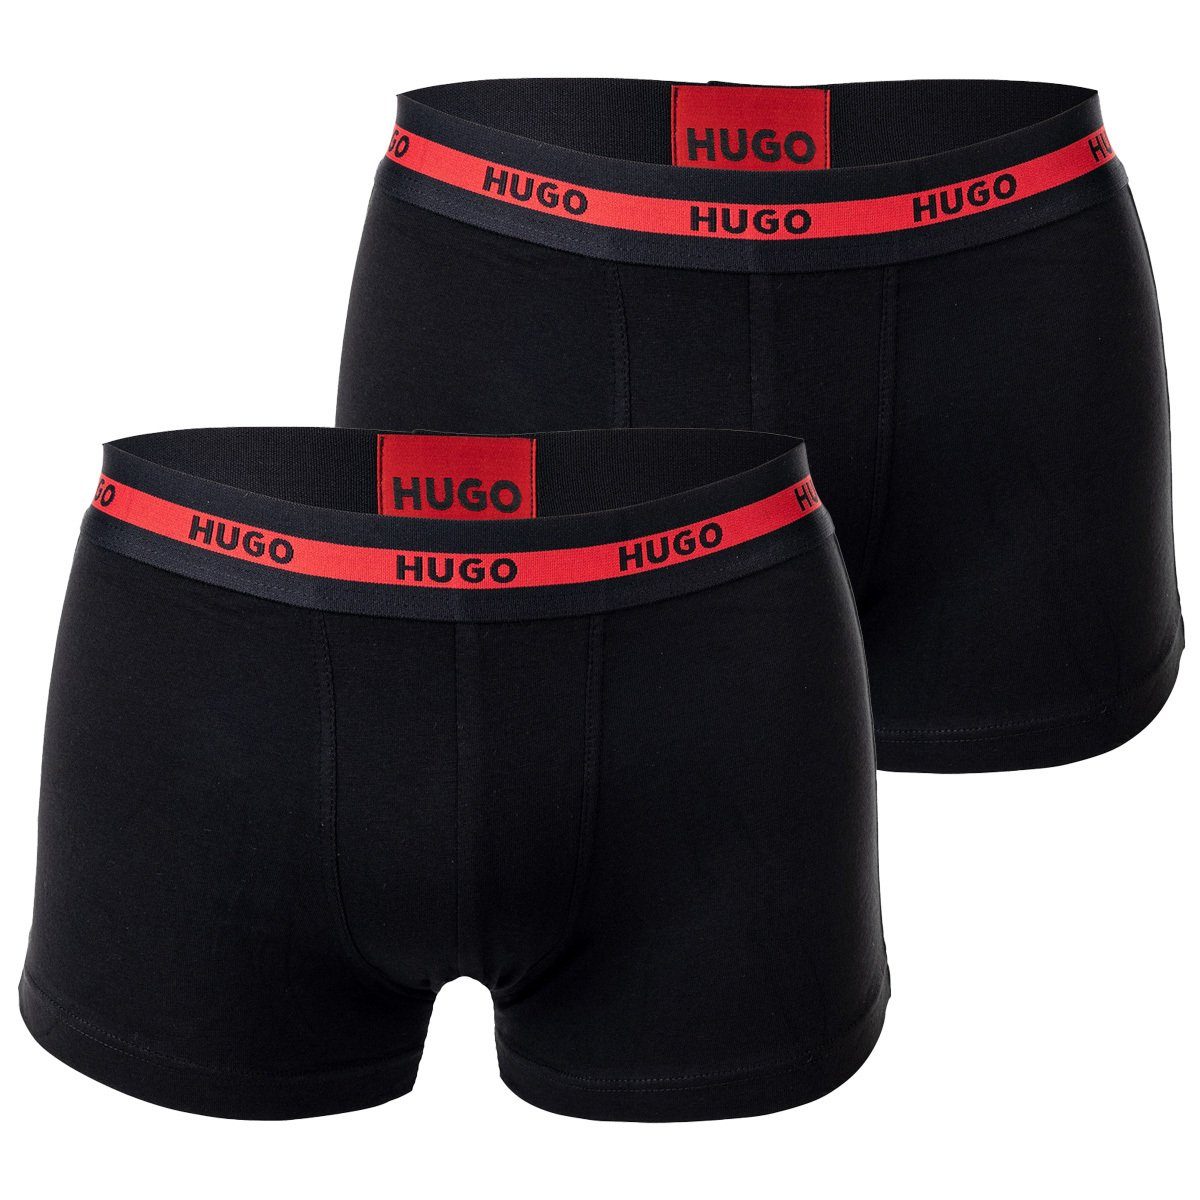 HUGO Boxer Herren Boxer Shorts, 2er Pack - Trunks Twin Pack Schwarz